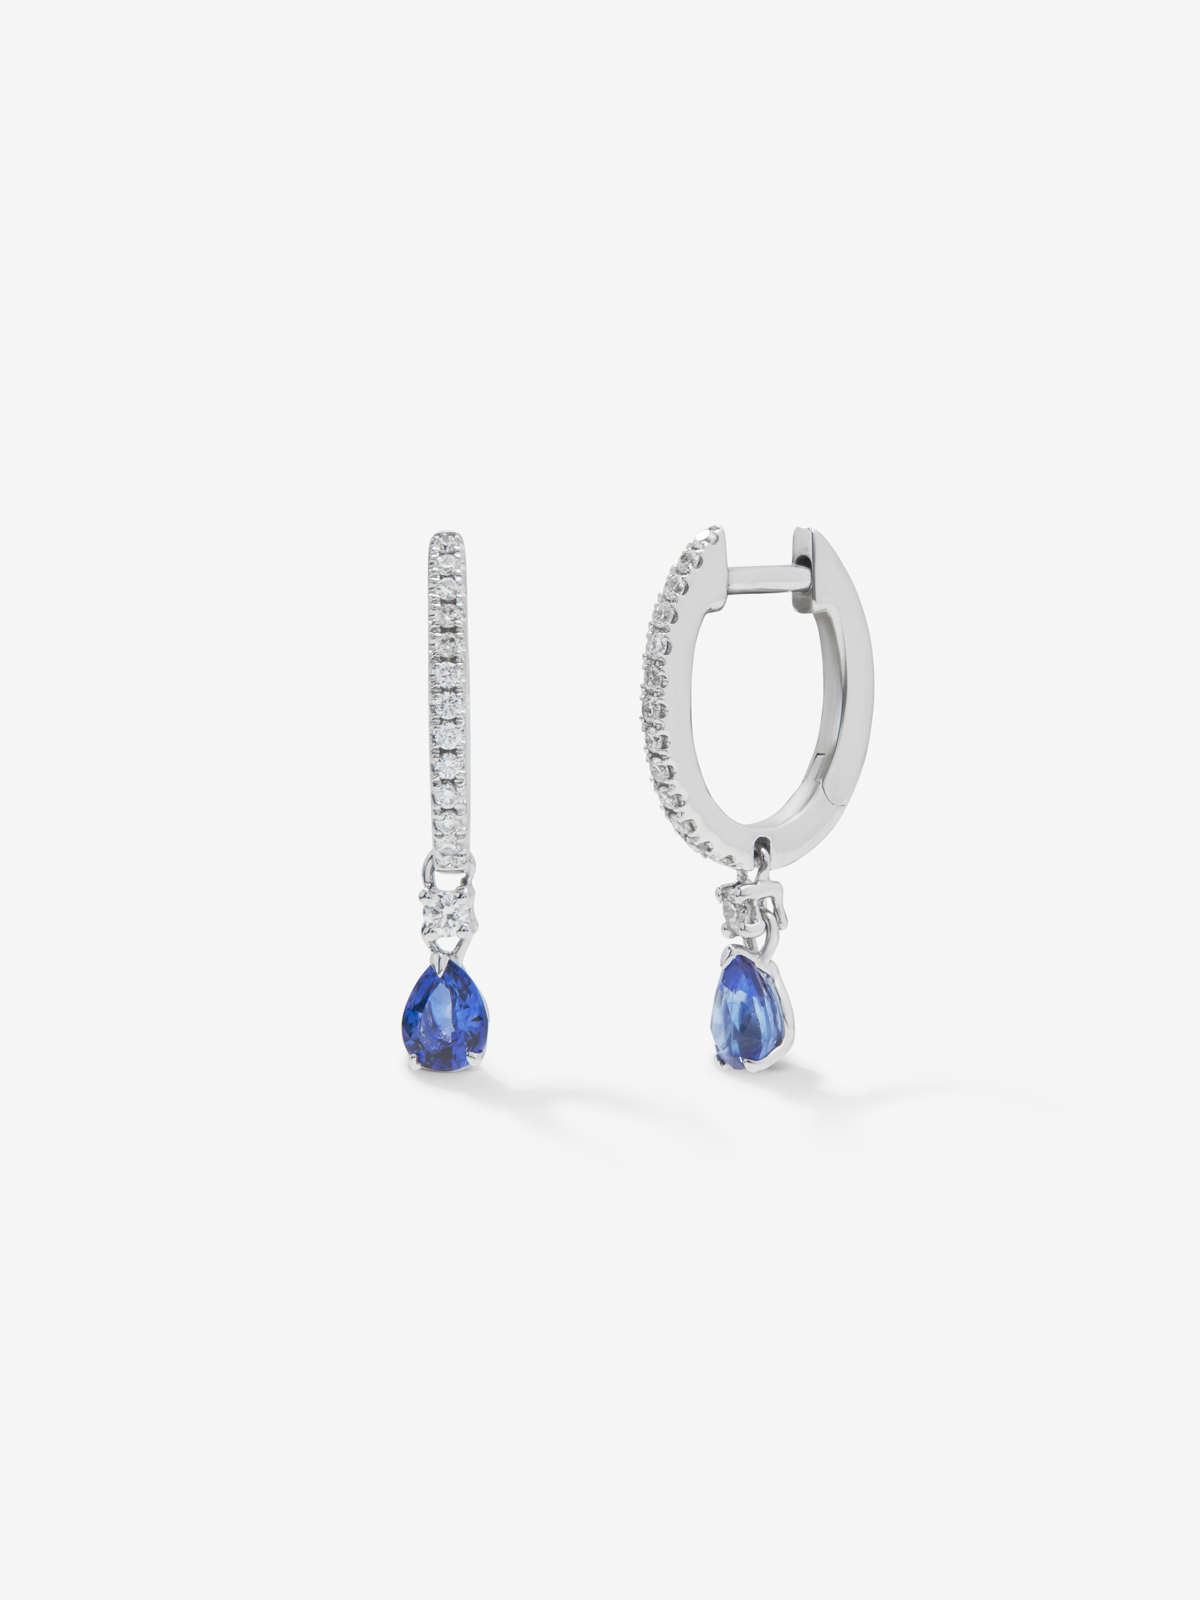 Pendientes de aro de oro blanco de 18K con zafiros azules en talla pera de 0,51 cts y diamantes blancos en talla brillante de 0,16 cts